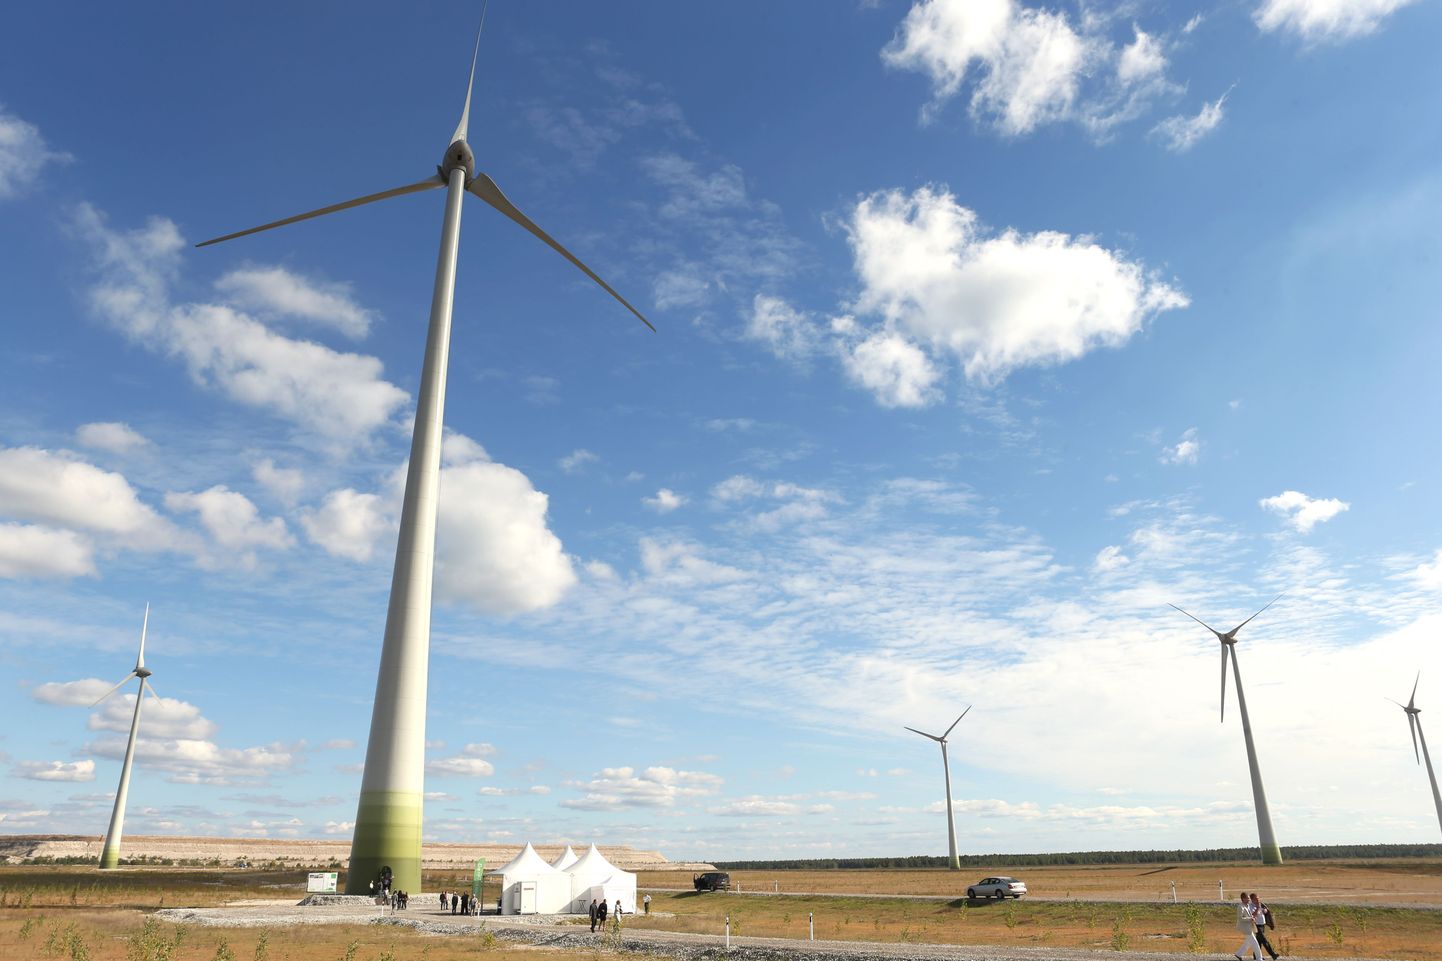 Eesti Energia toodab täna tuuleenergiat neljas tuulepargis. Lisaks pildil olevale Narva tuhavälja pargile veel Virtsus, Aulepas ja Paldiskis.